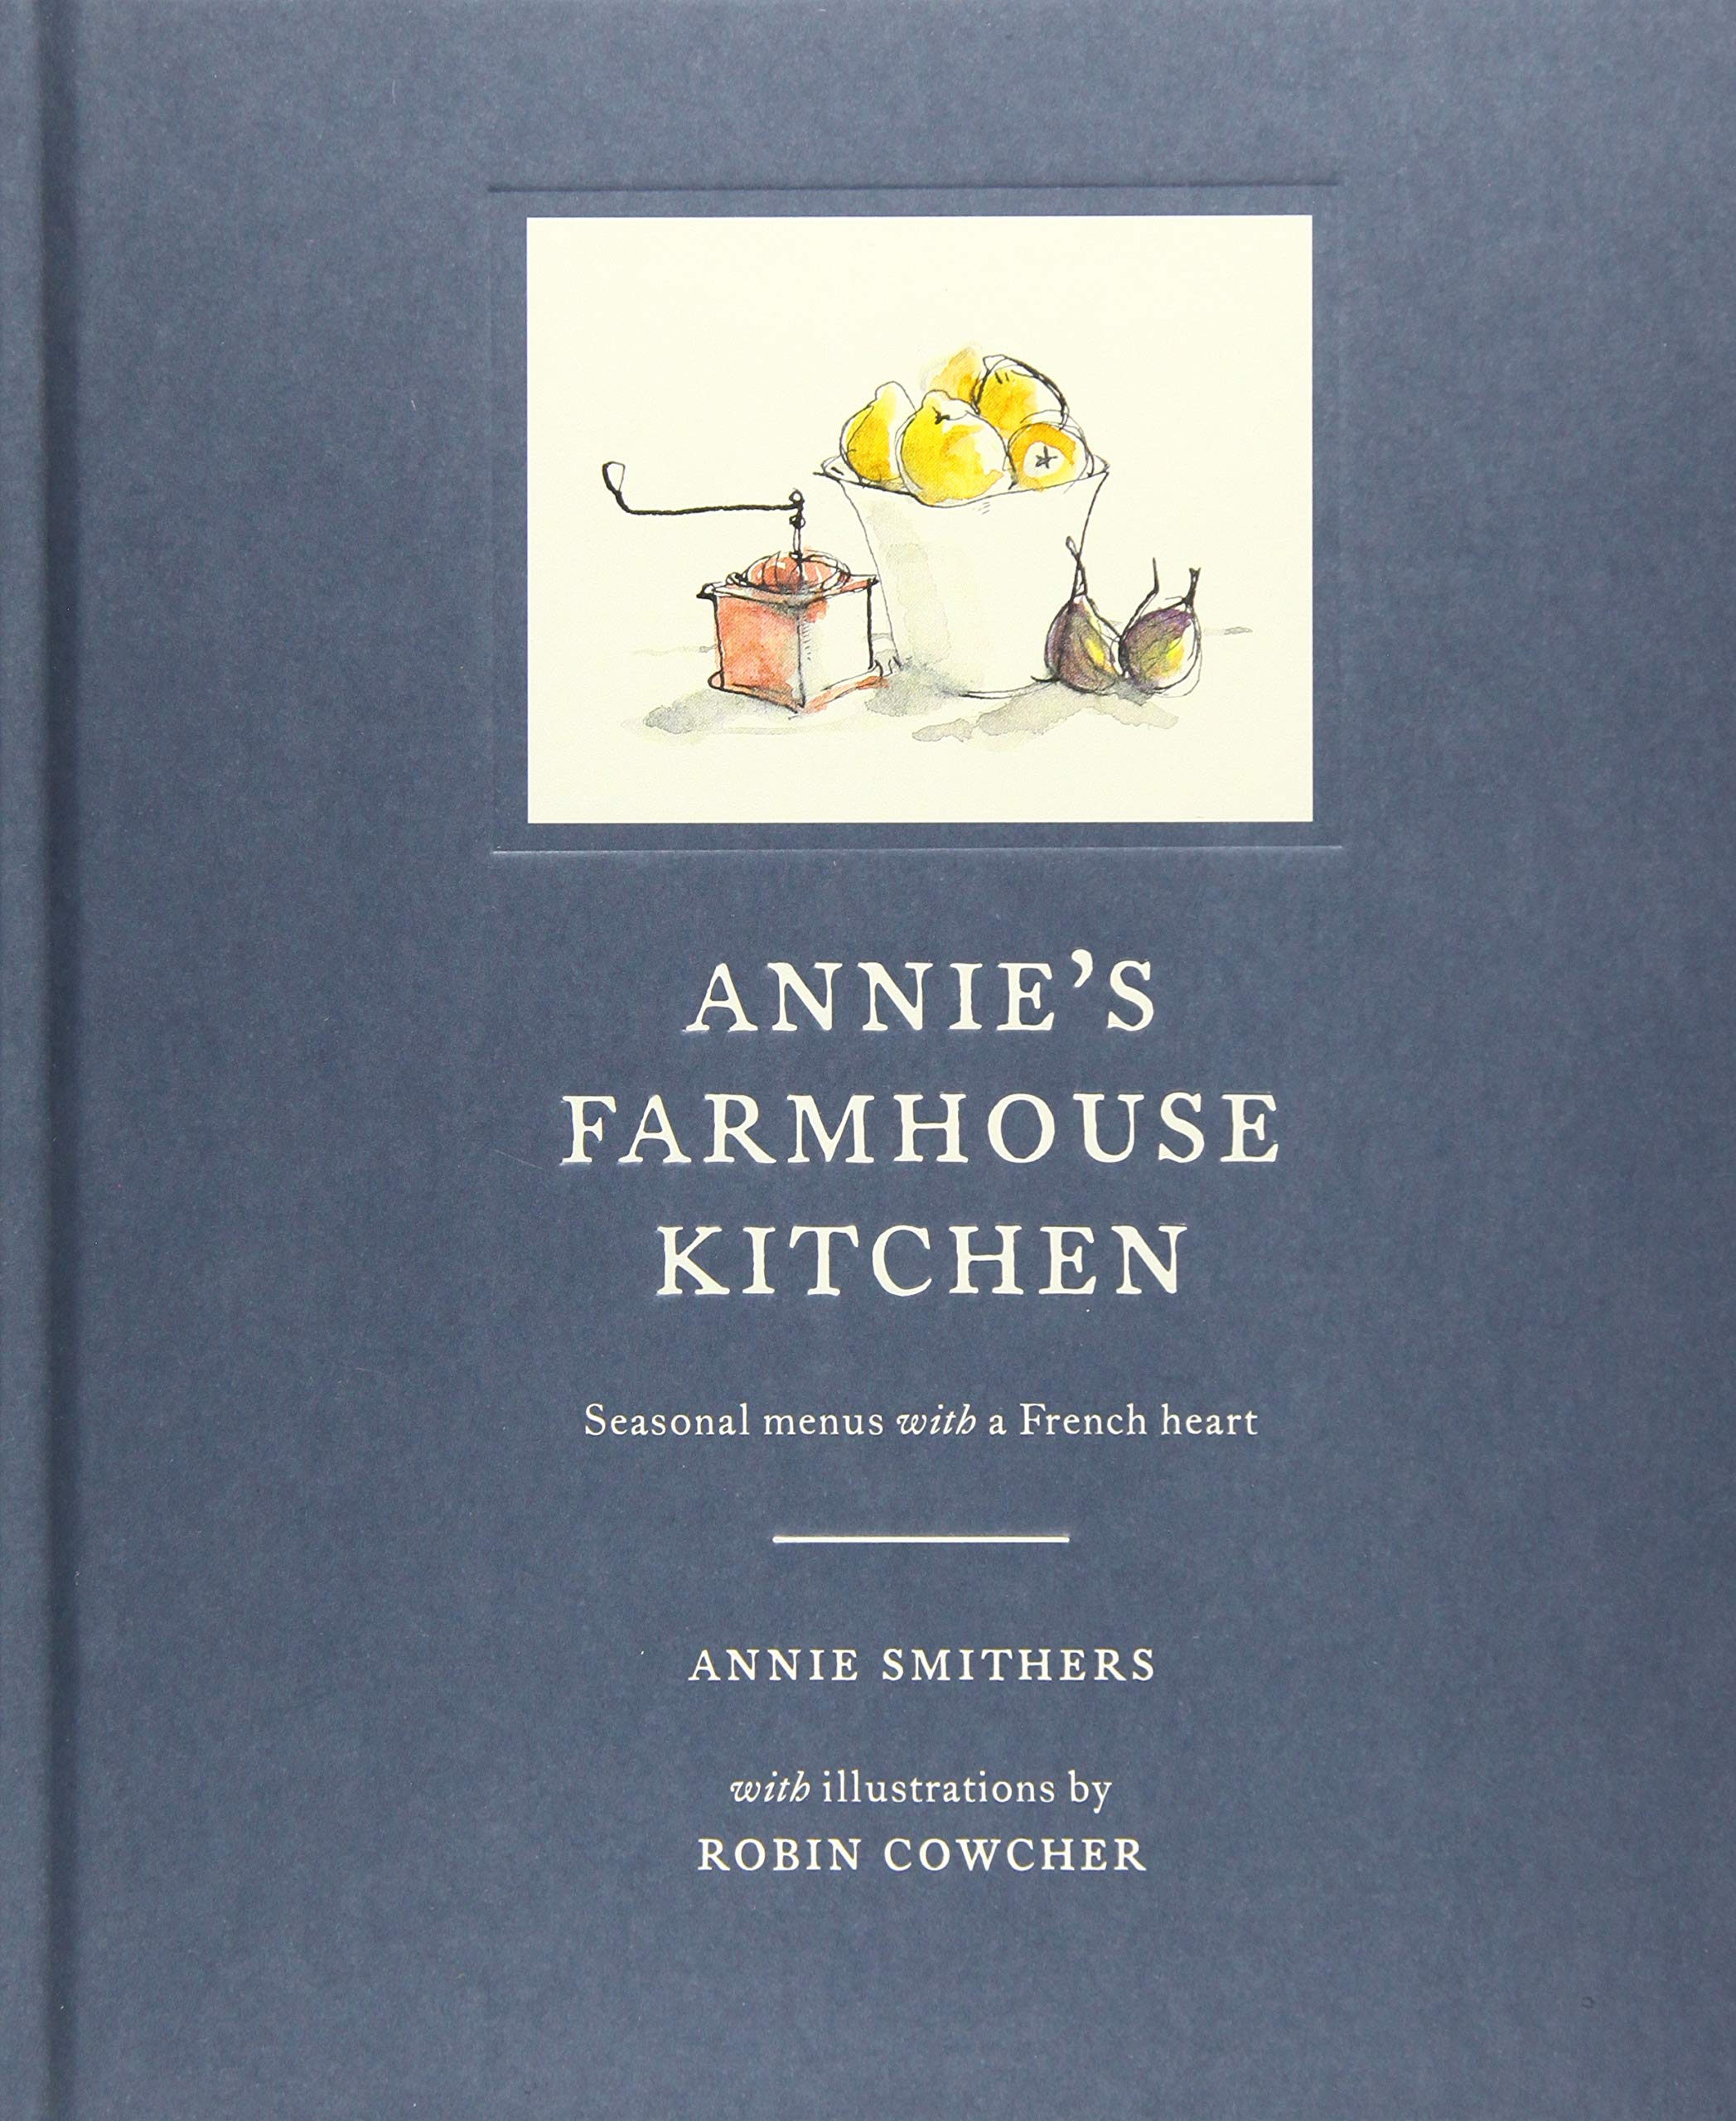 Annie's Farmhouse Kitchen (Annie Smithers)